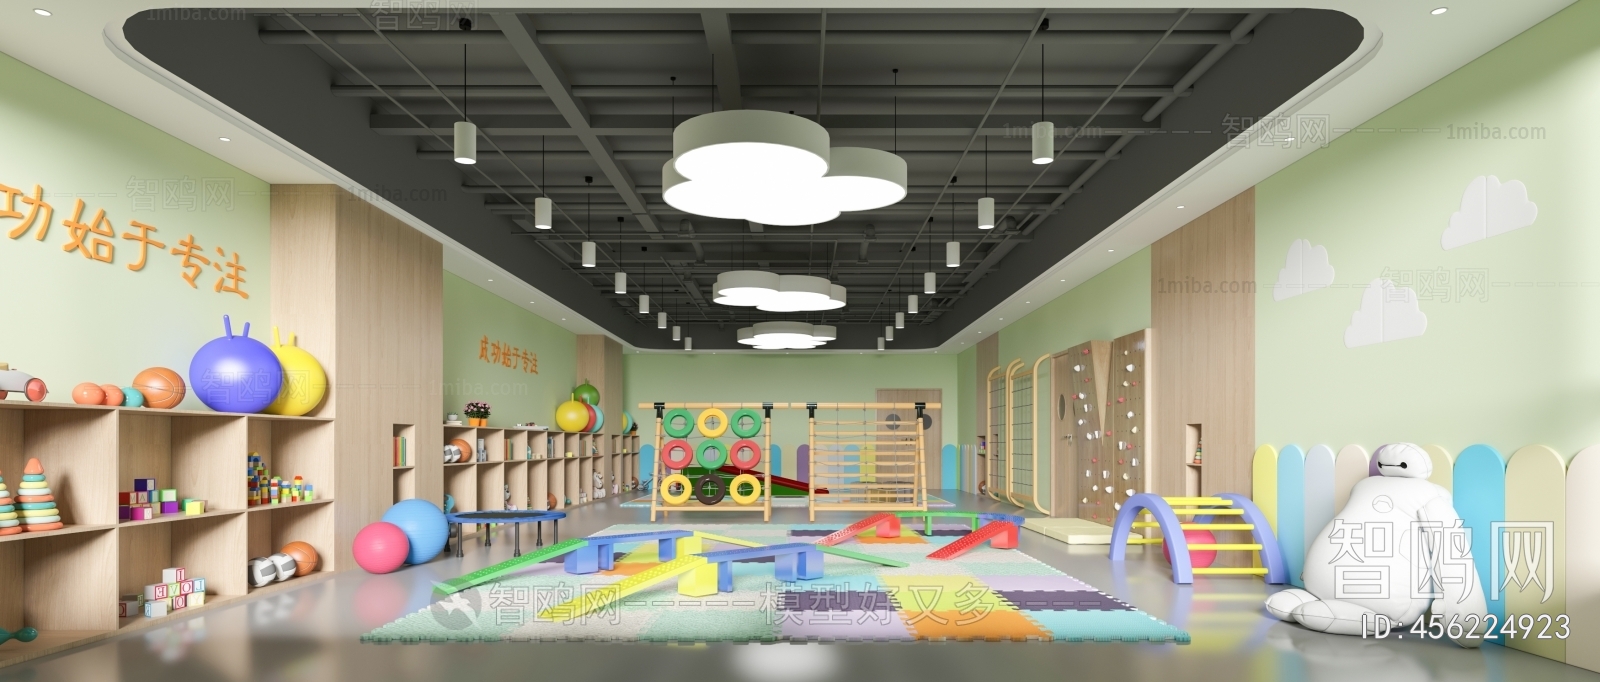 现代幼儿园儿童游乐活动室